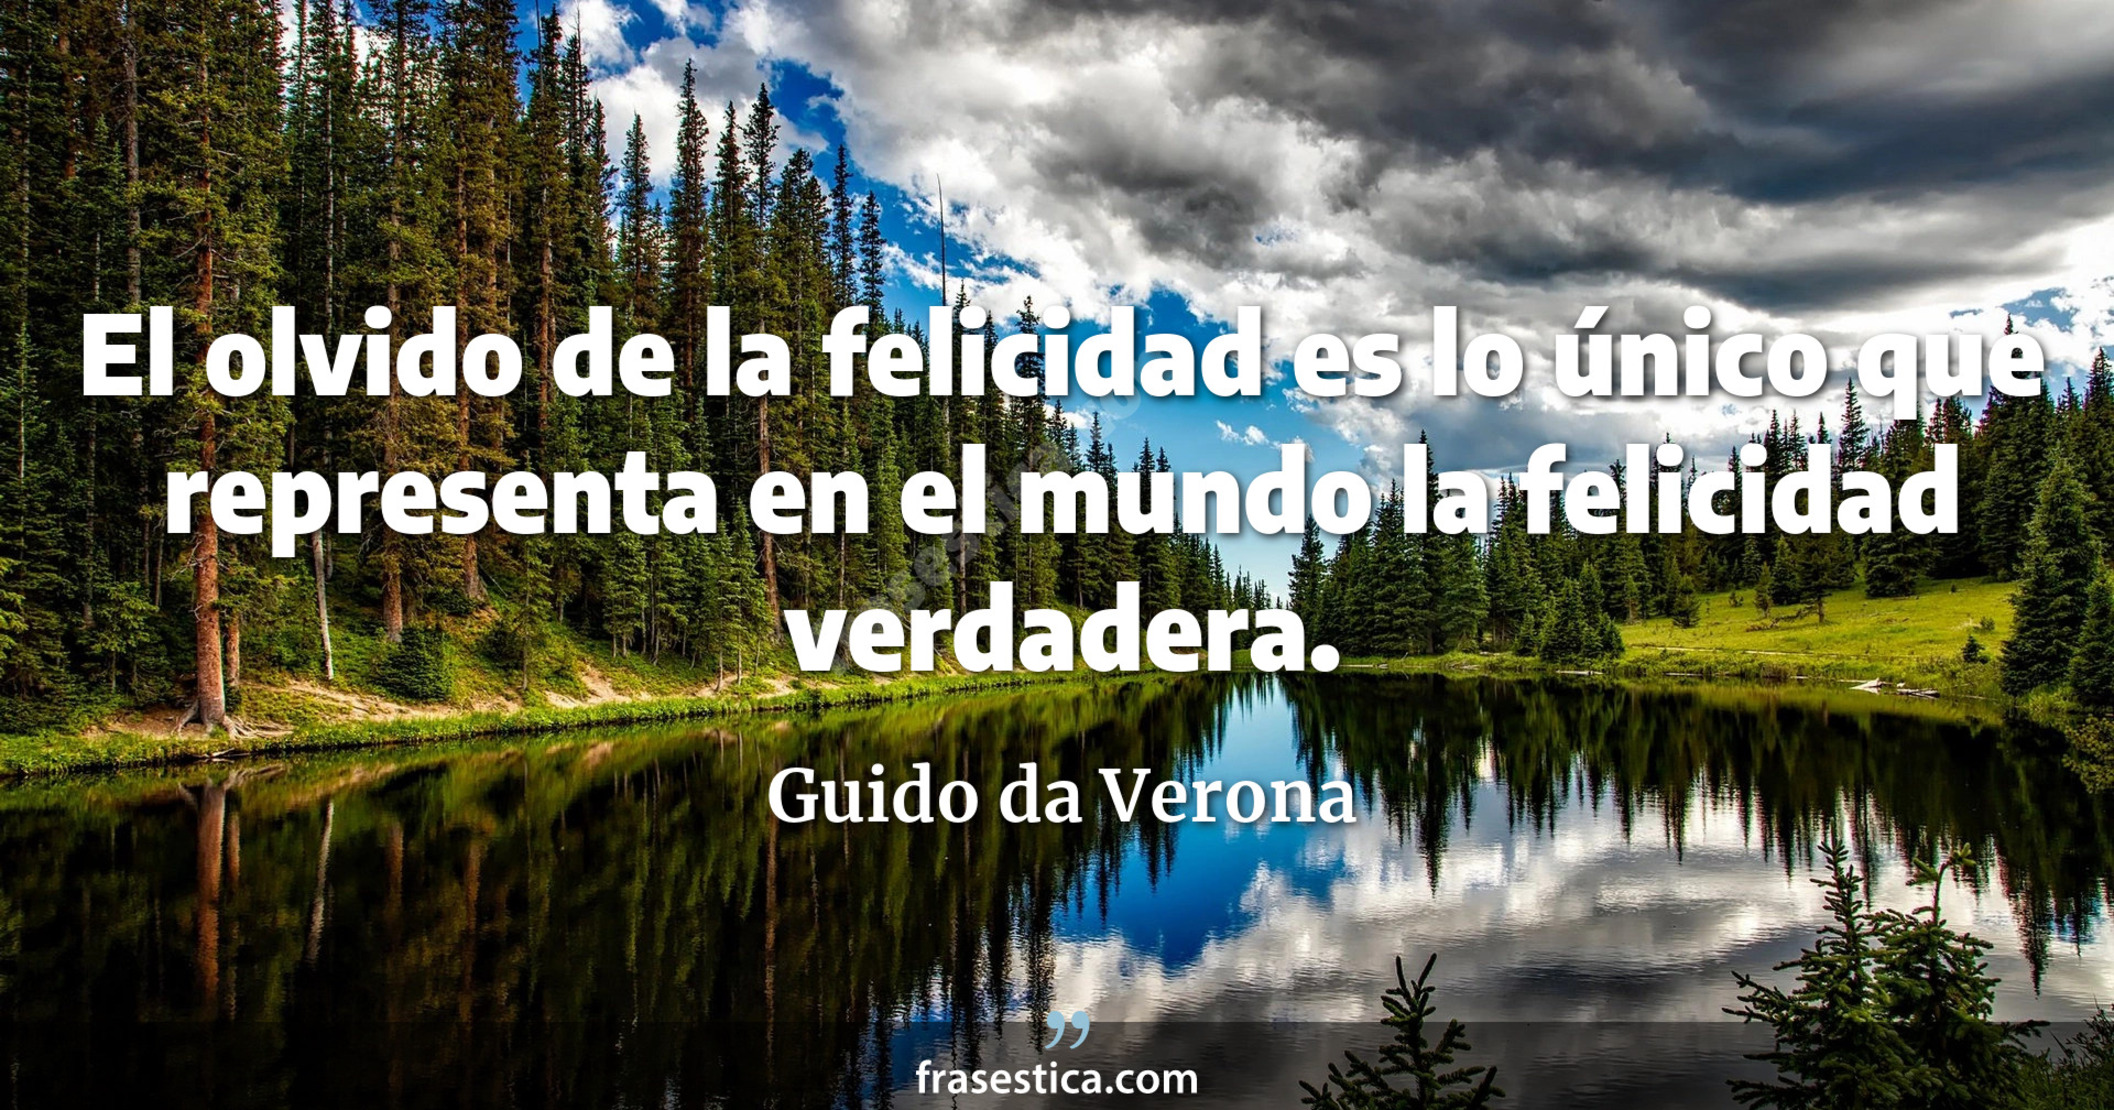 El olvido de la felicidad es lo único que representa en el mundo la felicidad verdadera. - Guido da Verona